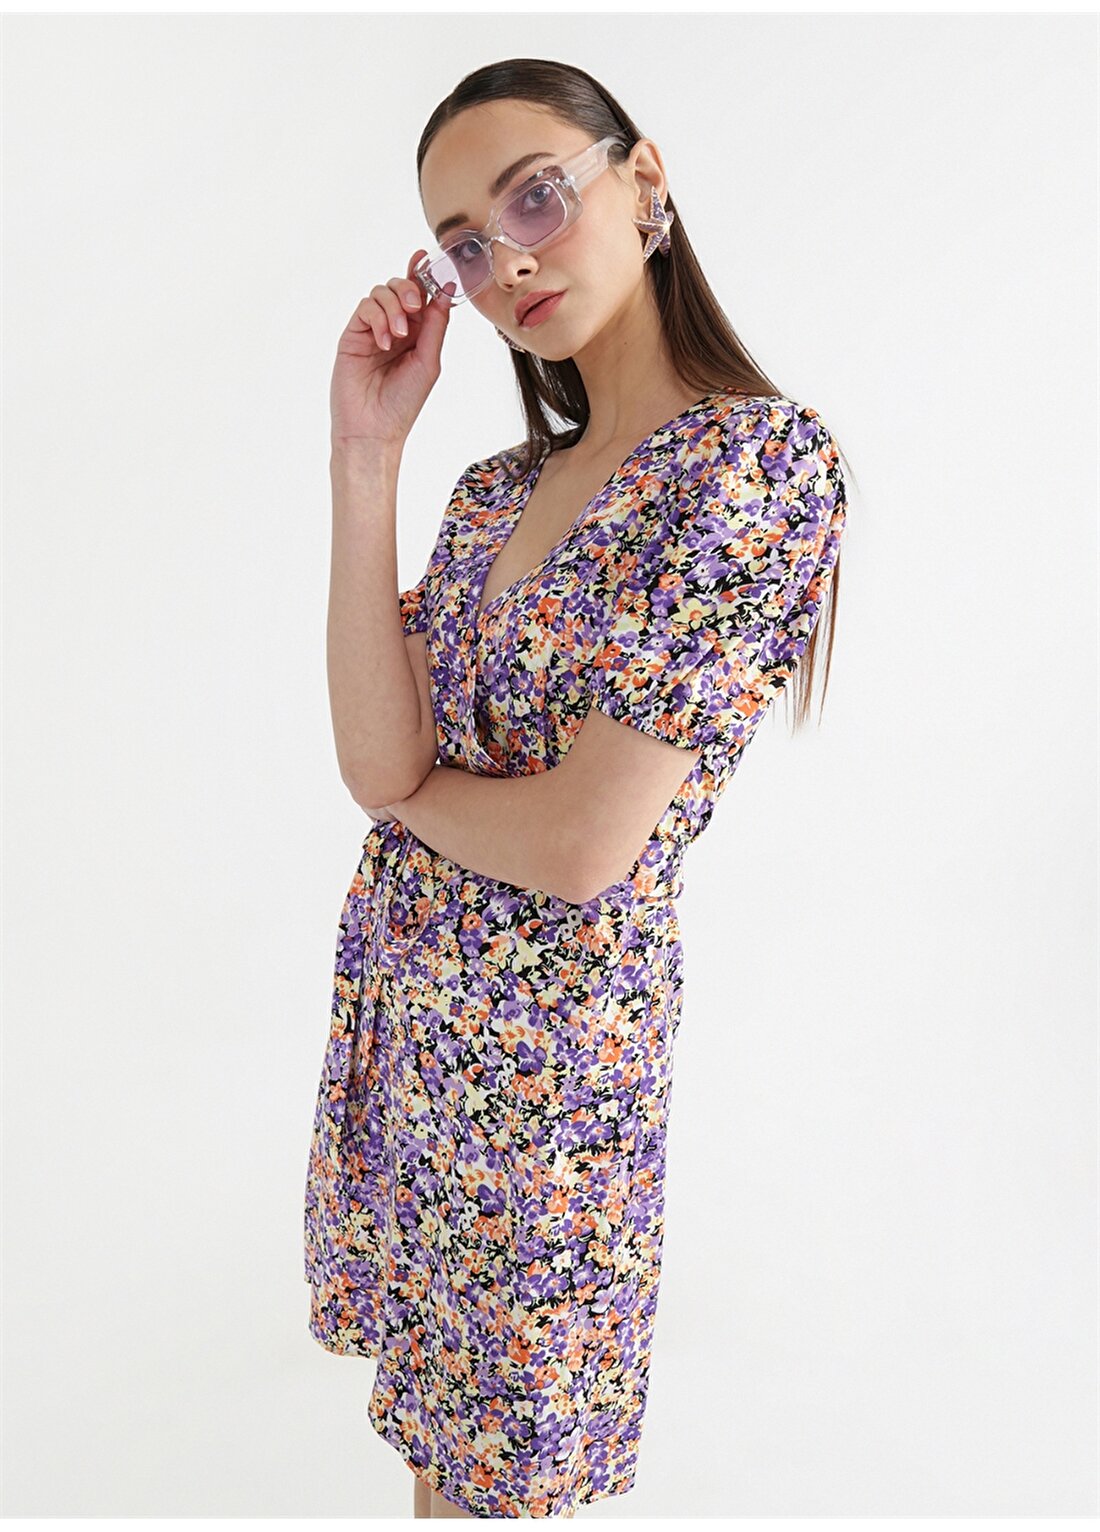 Fabrika Kruvaze Yaka Çiçek Desenli Çok Renkli Mini Kadın Elbise EMMA-2